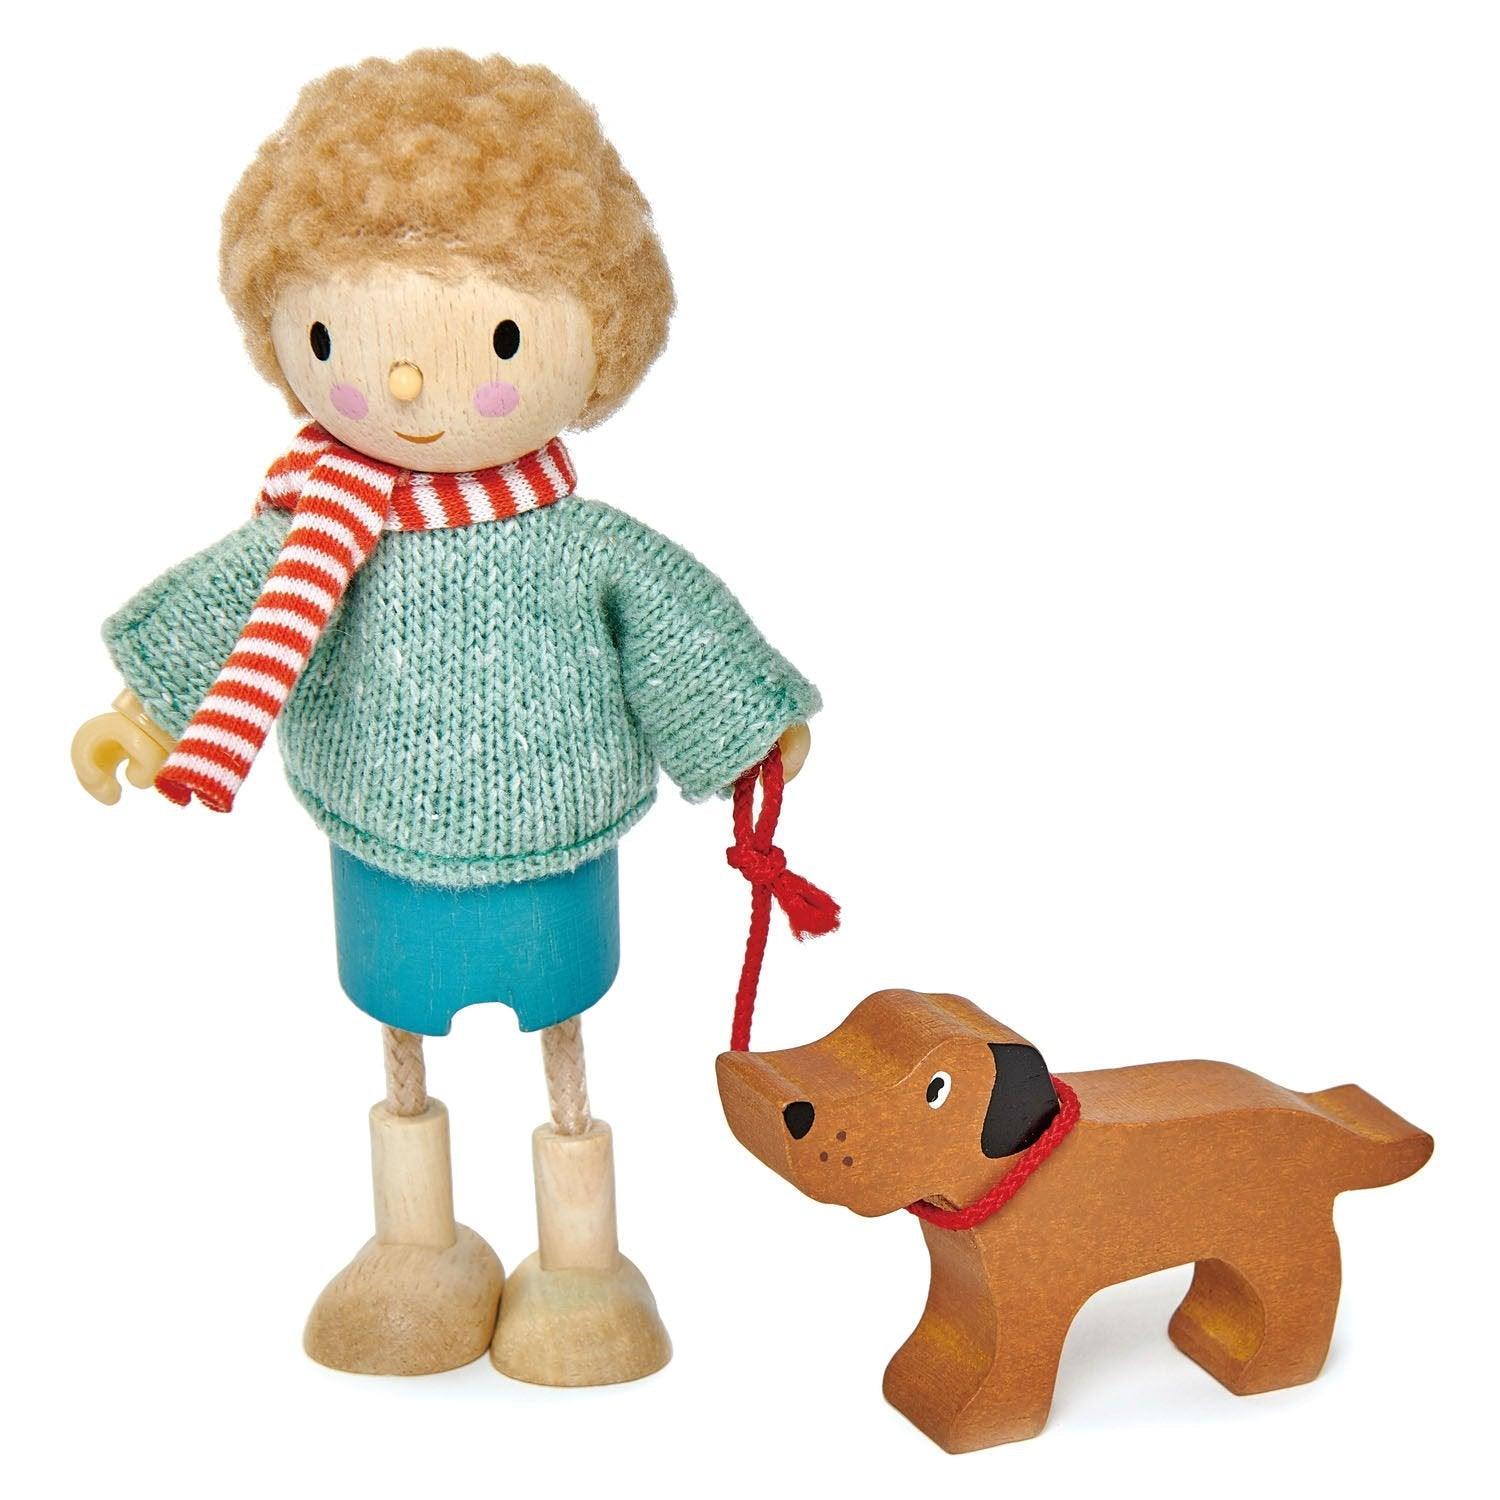 Παιχνίδια φύλλων τρυφερά: Ο κ. Goodwood και η κούκλα του σκύλου του